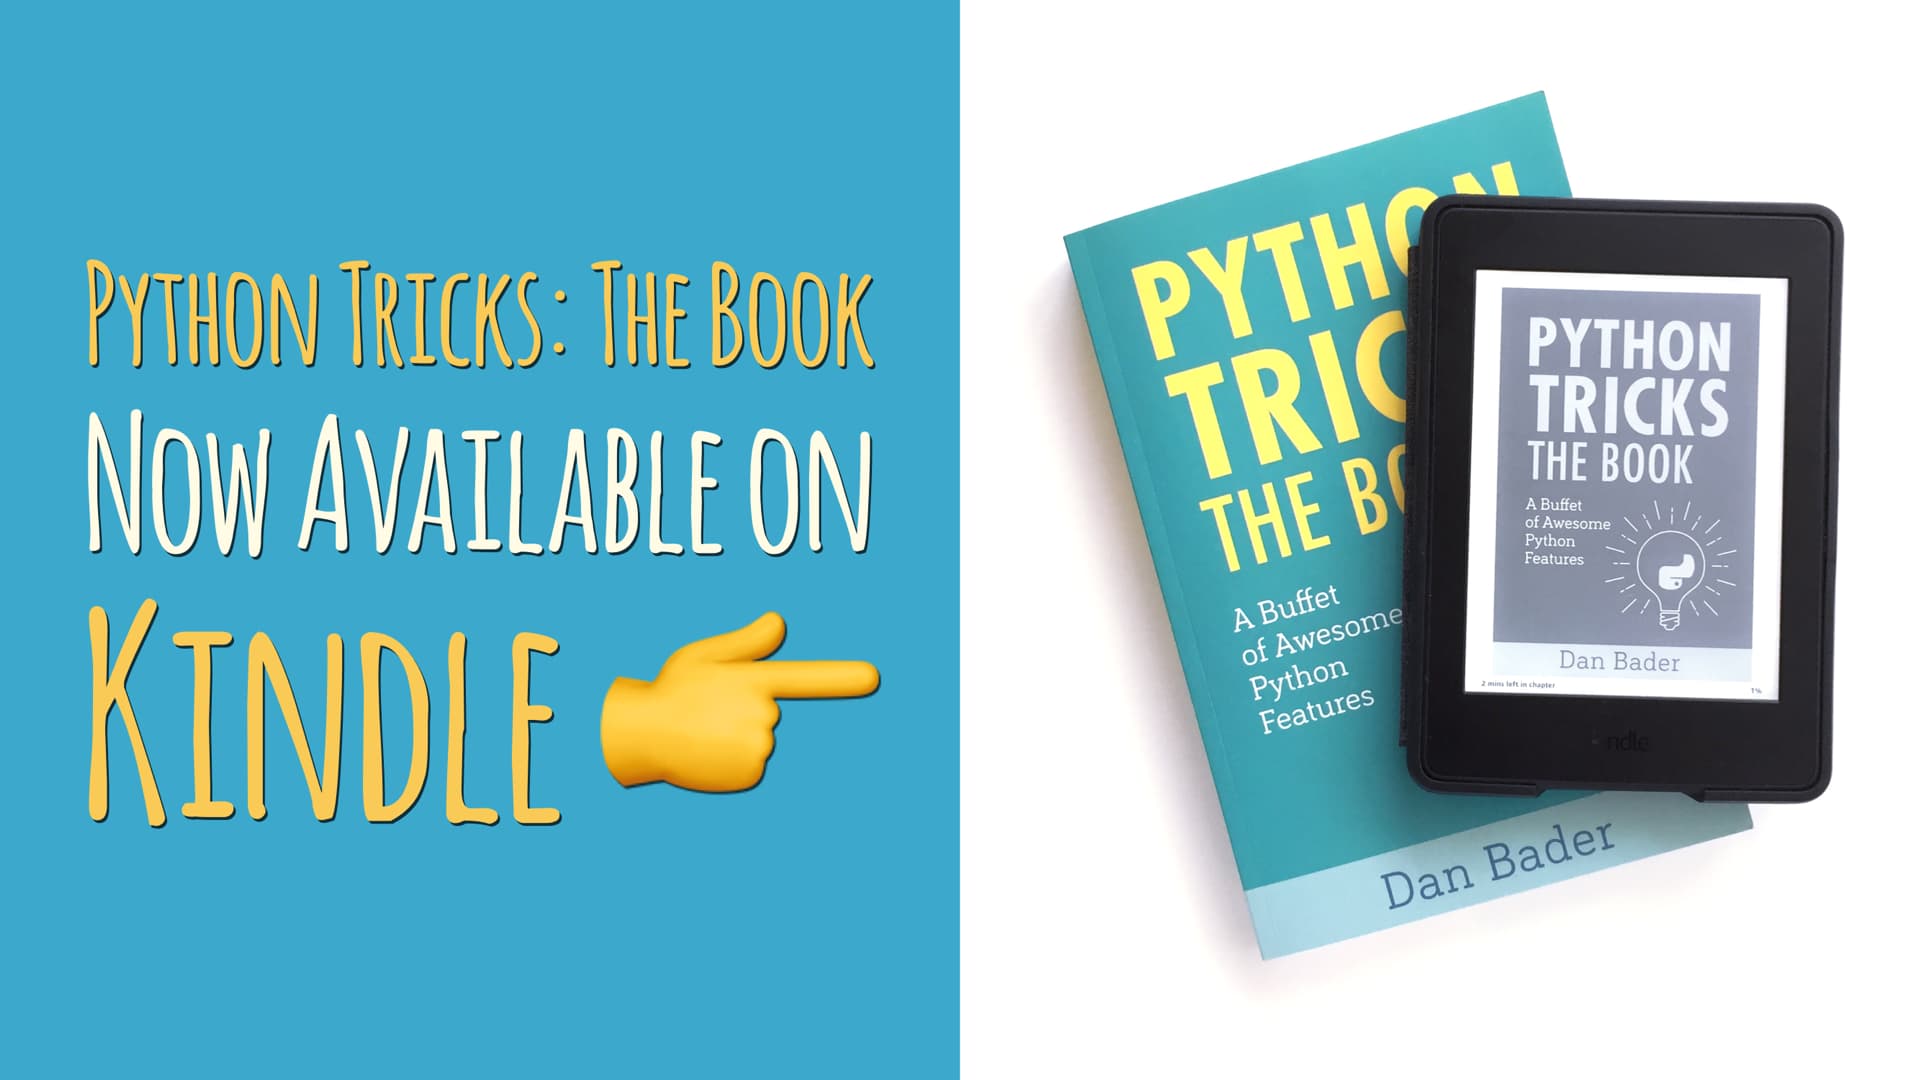 Python Tricks Kindle Announcement